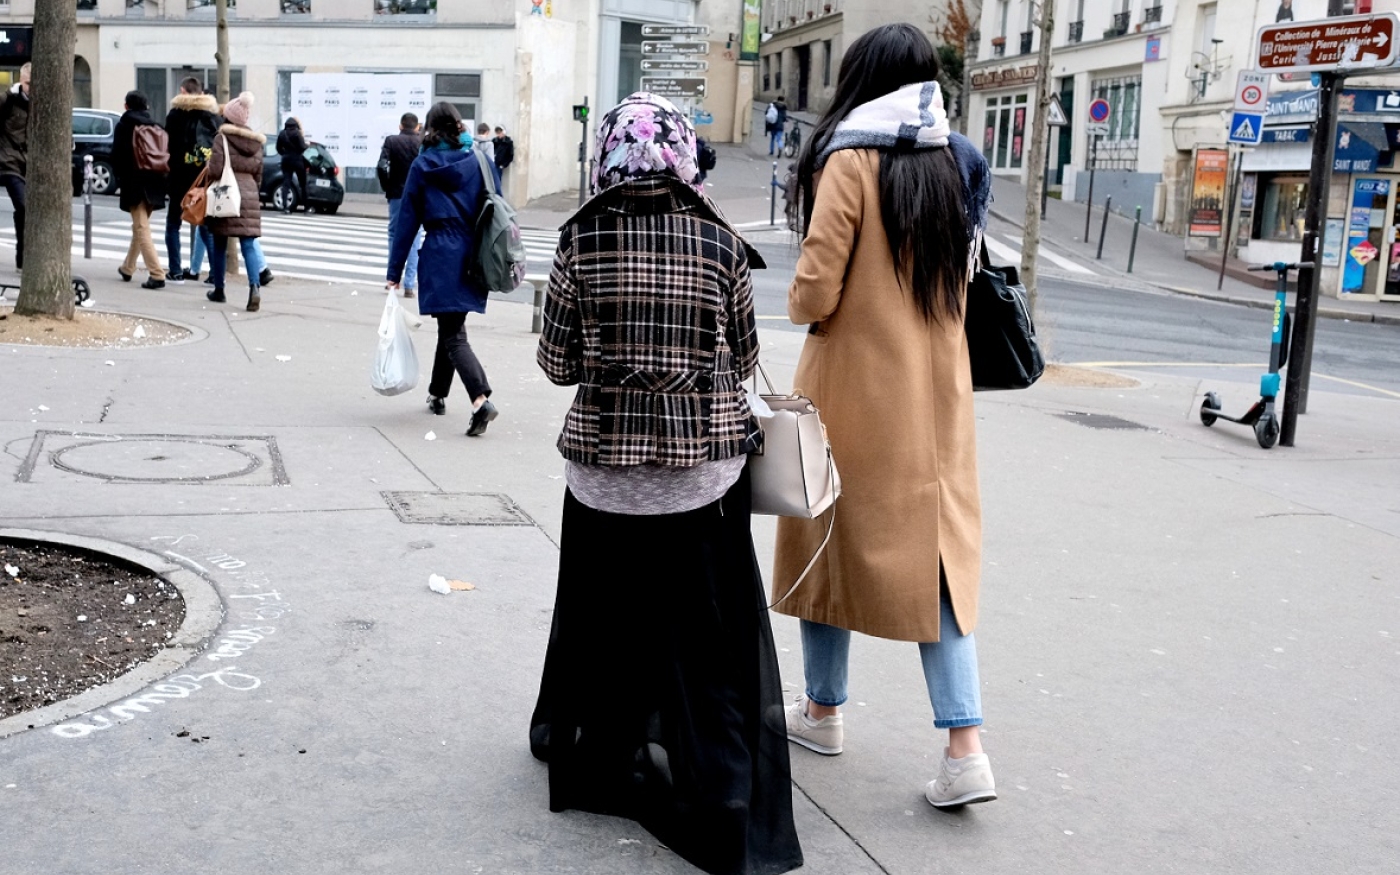 Ces femmes « aspirent à un anonymat esthétique dans la rue », note Hanane Karimi (MEE/Nadja Makhlouf)